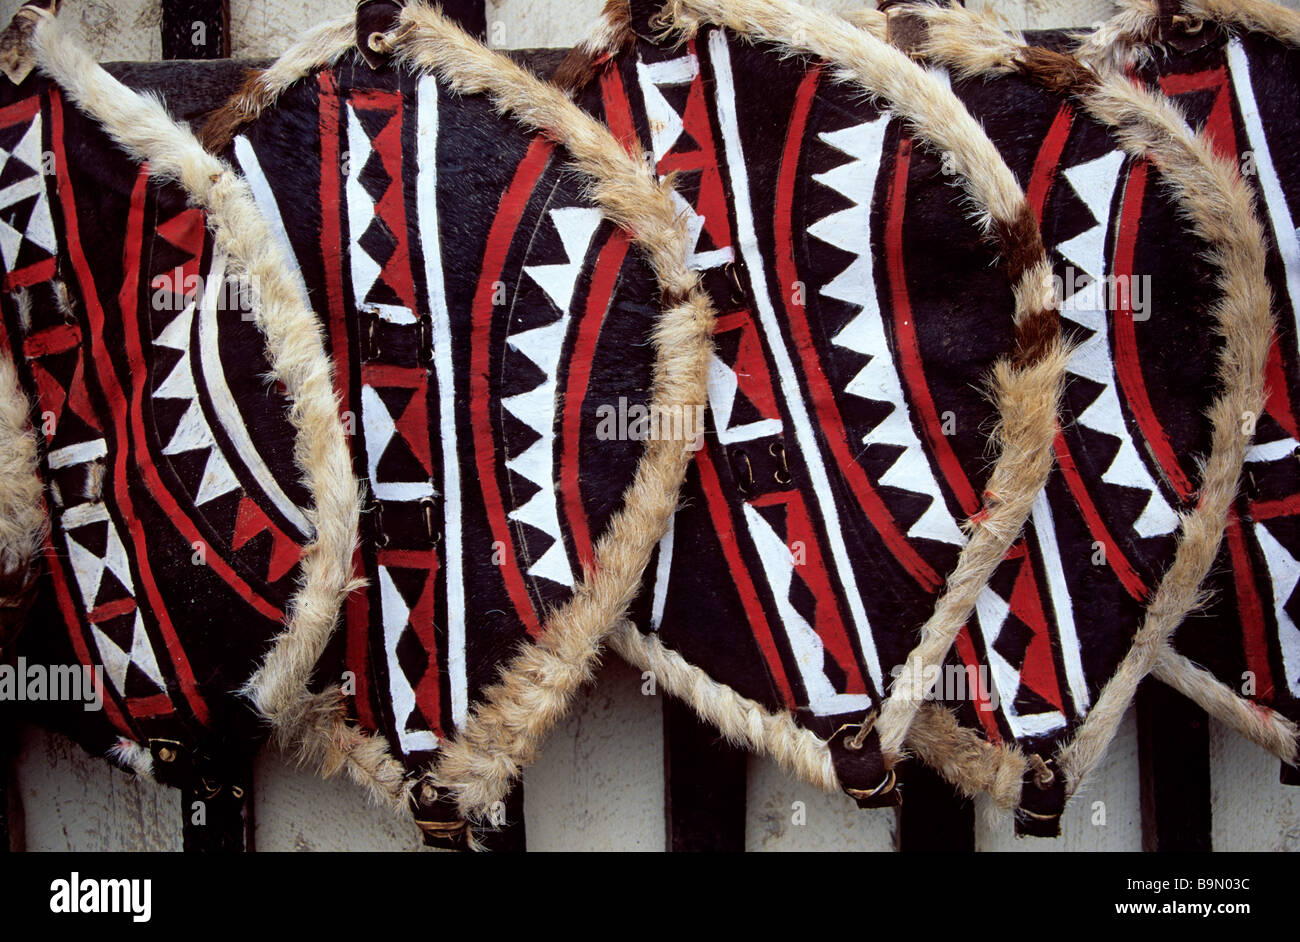 Kenia Masai shields Foto Stock